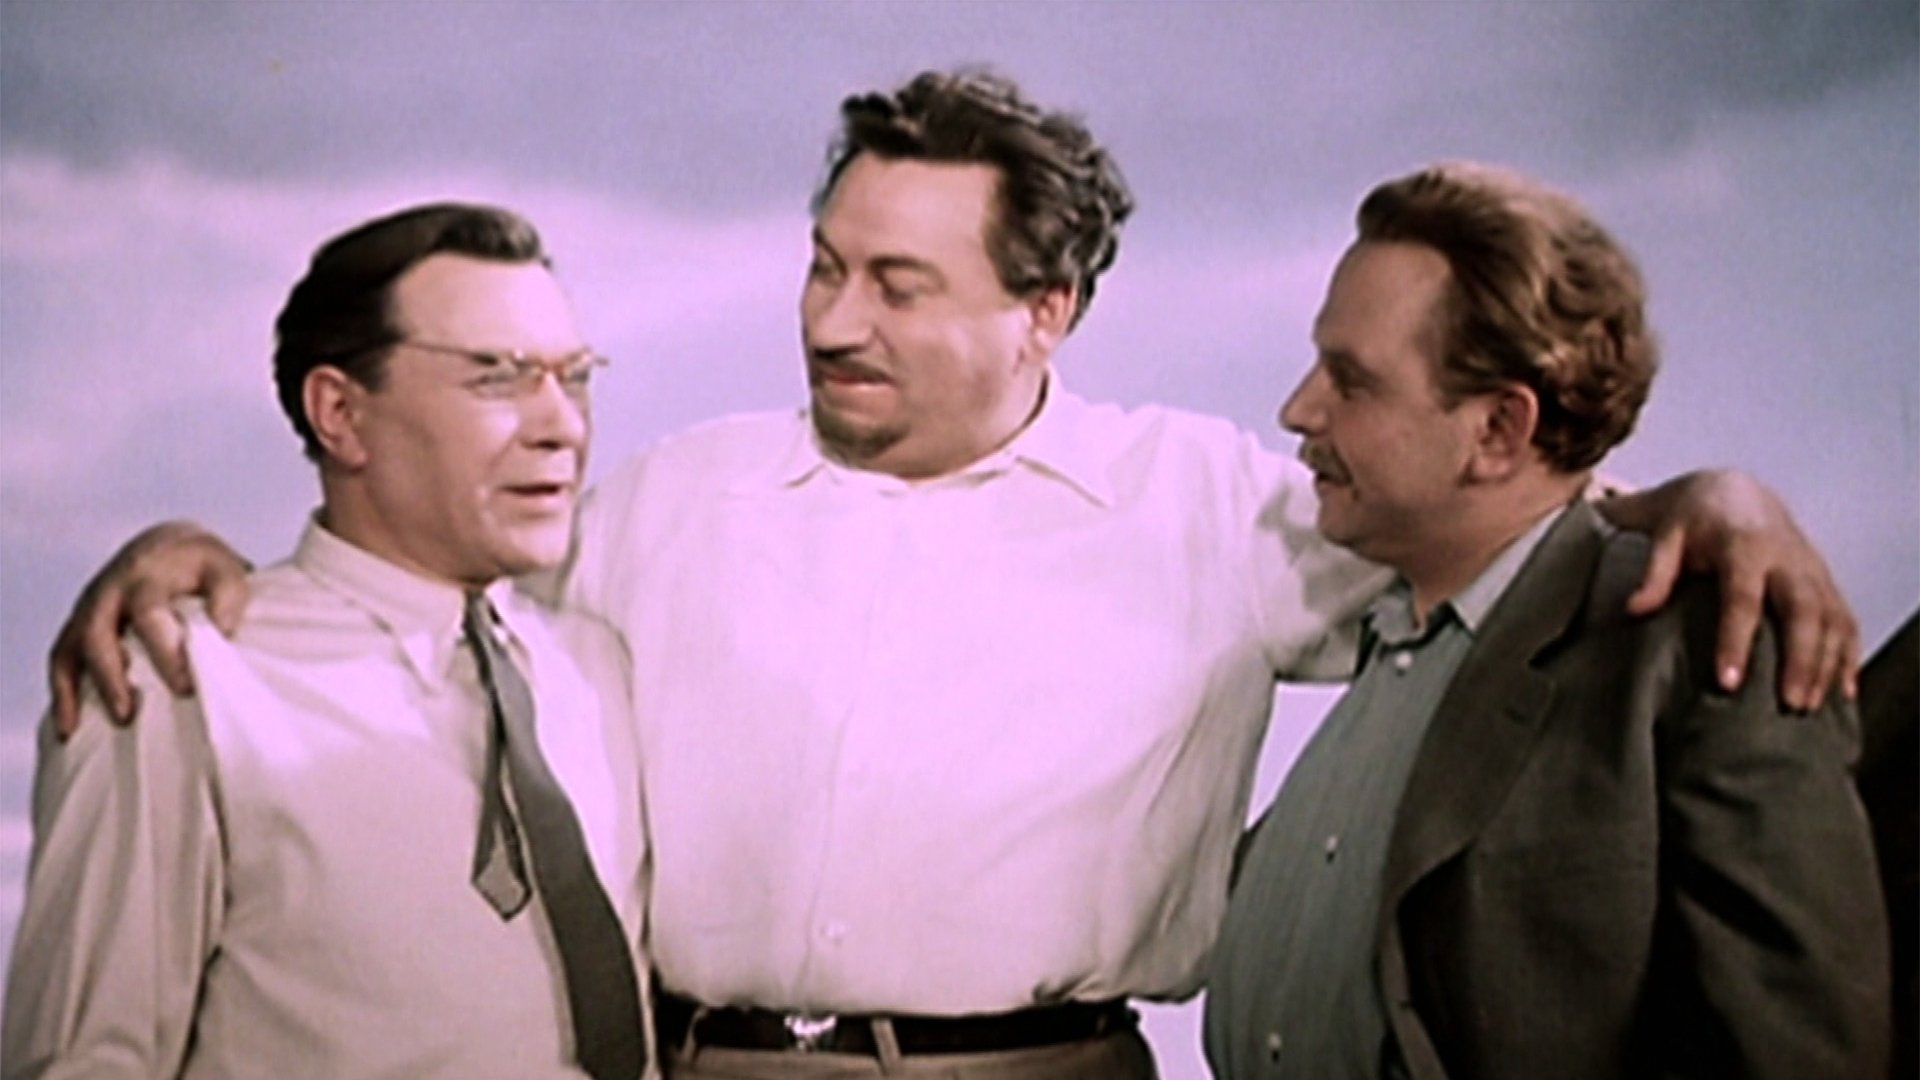 Фильм верные друзья актеры и роли фото 1954 года